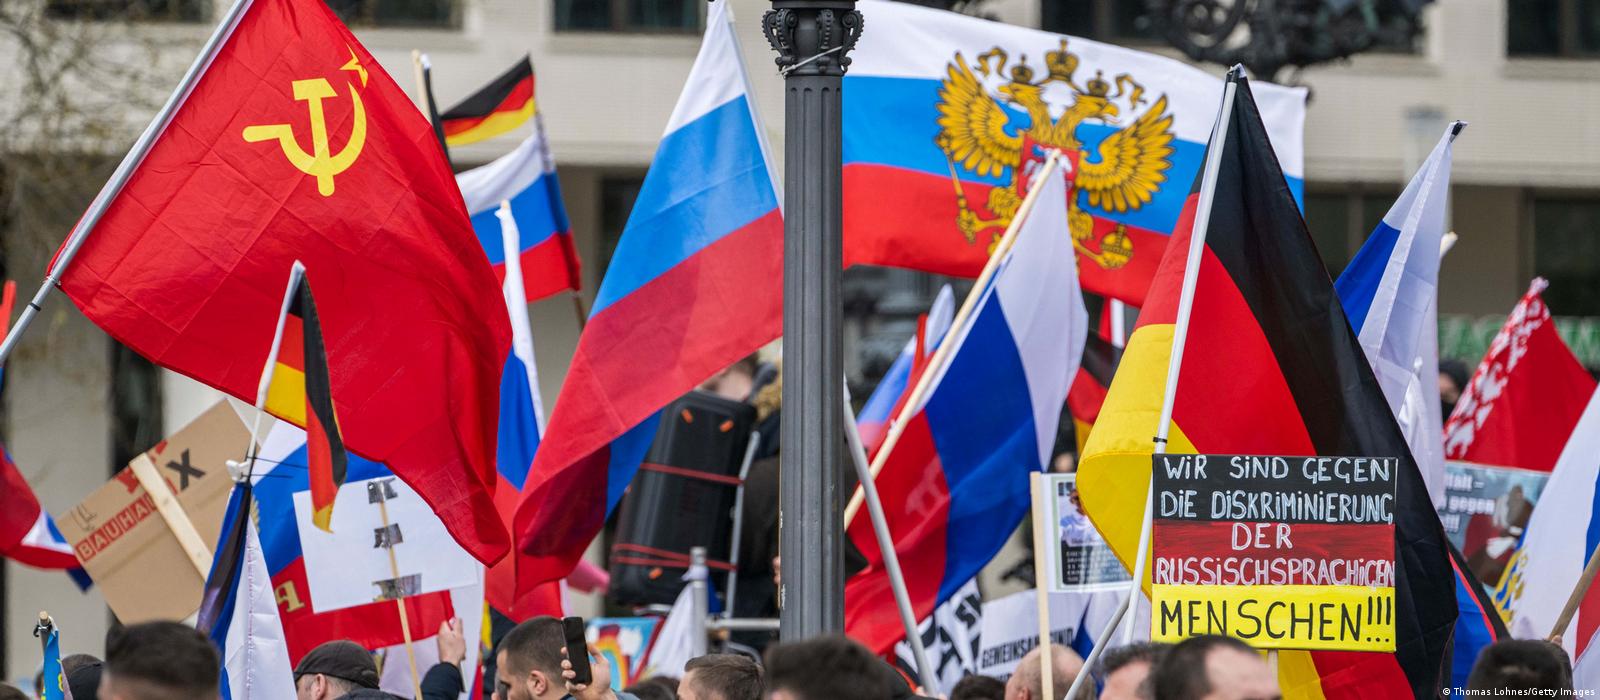 Tham gia vào biểu tình ủng hộ Nga ở Ukraine và cùng nhau đấu tranh cho một tương lai tốt đẹp hơn cho các quốc gia. Hãy lắng nghe tiếng nói của những người đồng cảm và tìm hiểu cách mà lá cờ ở biểu tình đại diện cho tình yêu đất nước.